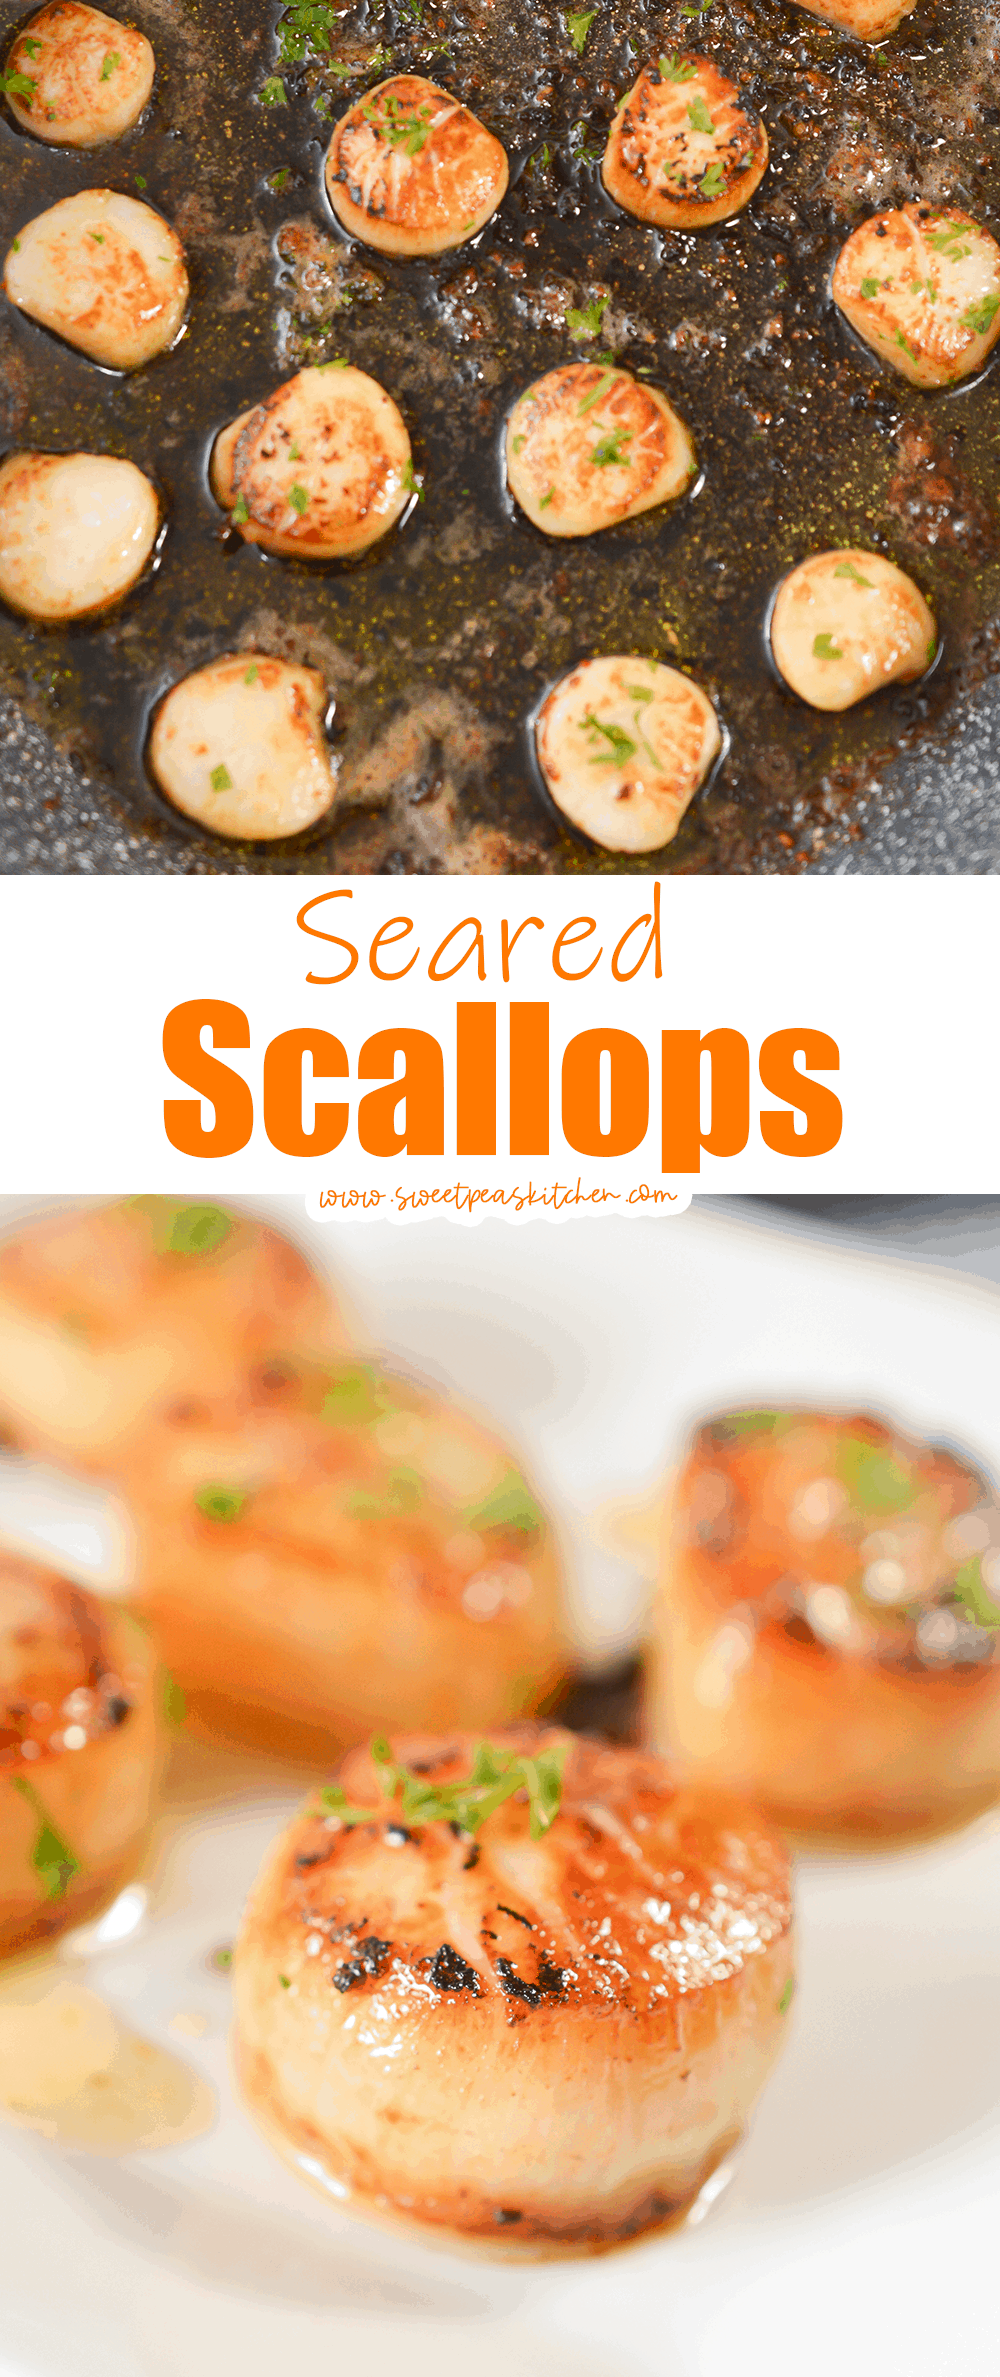 Seared Scallops